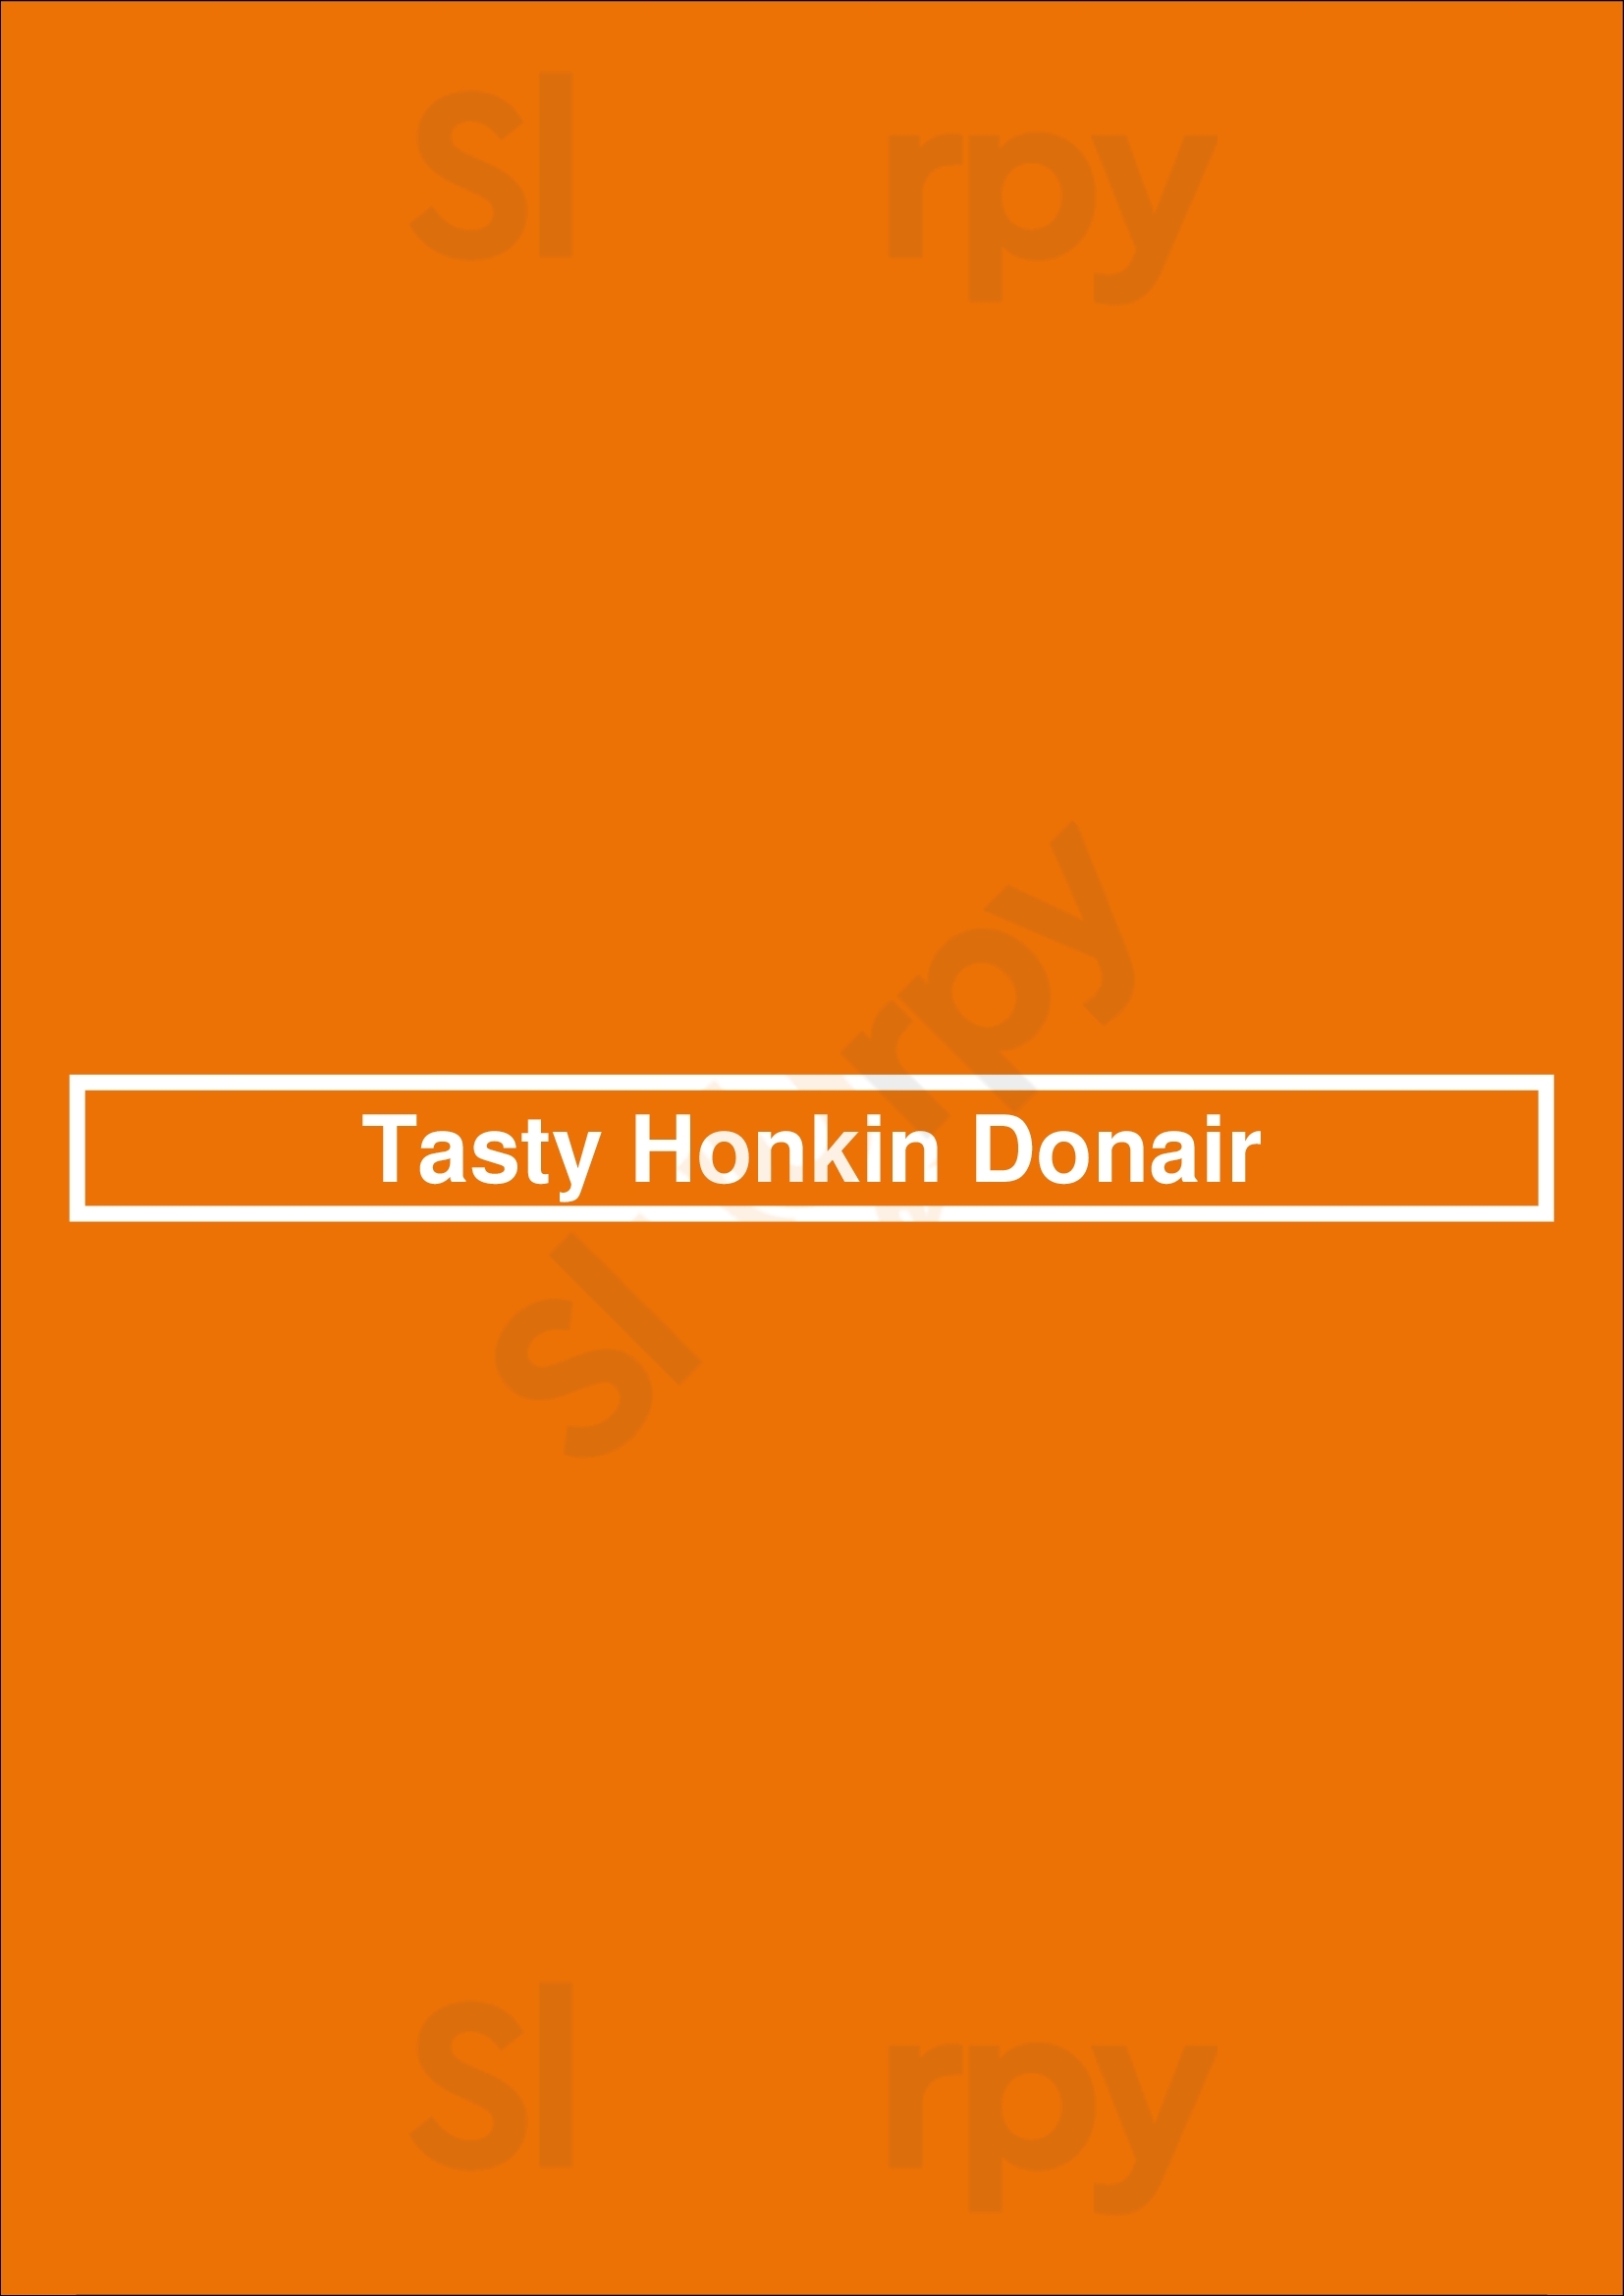 Tasty Honkin Donair Port Coquitlam Menu - 1